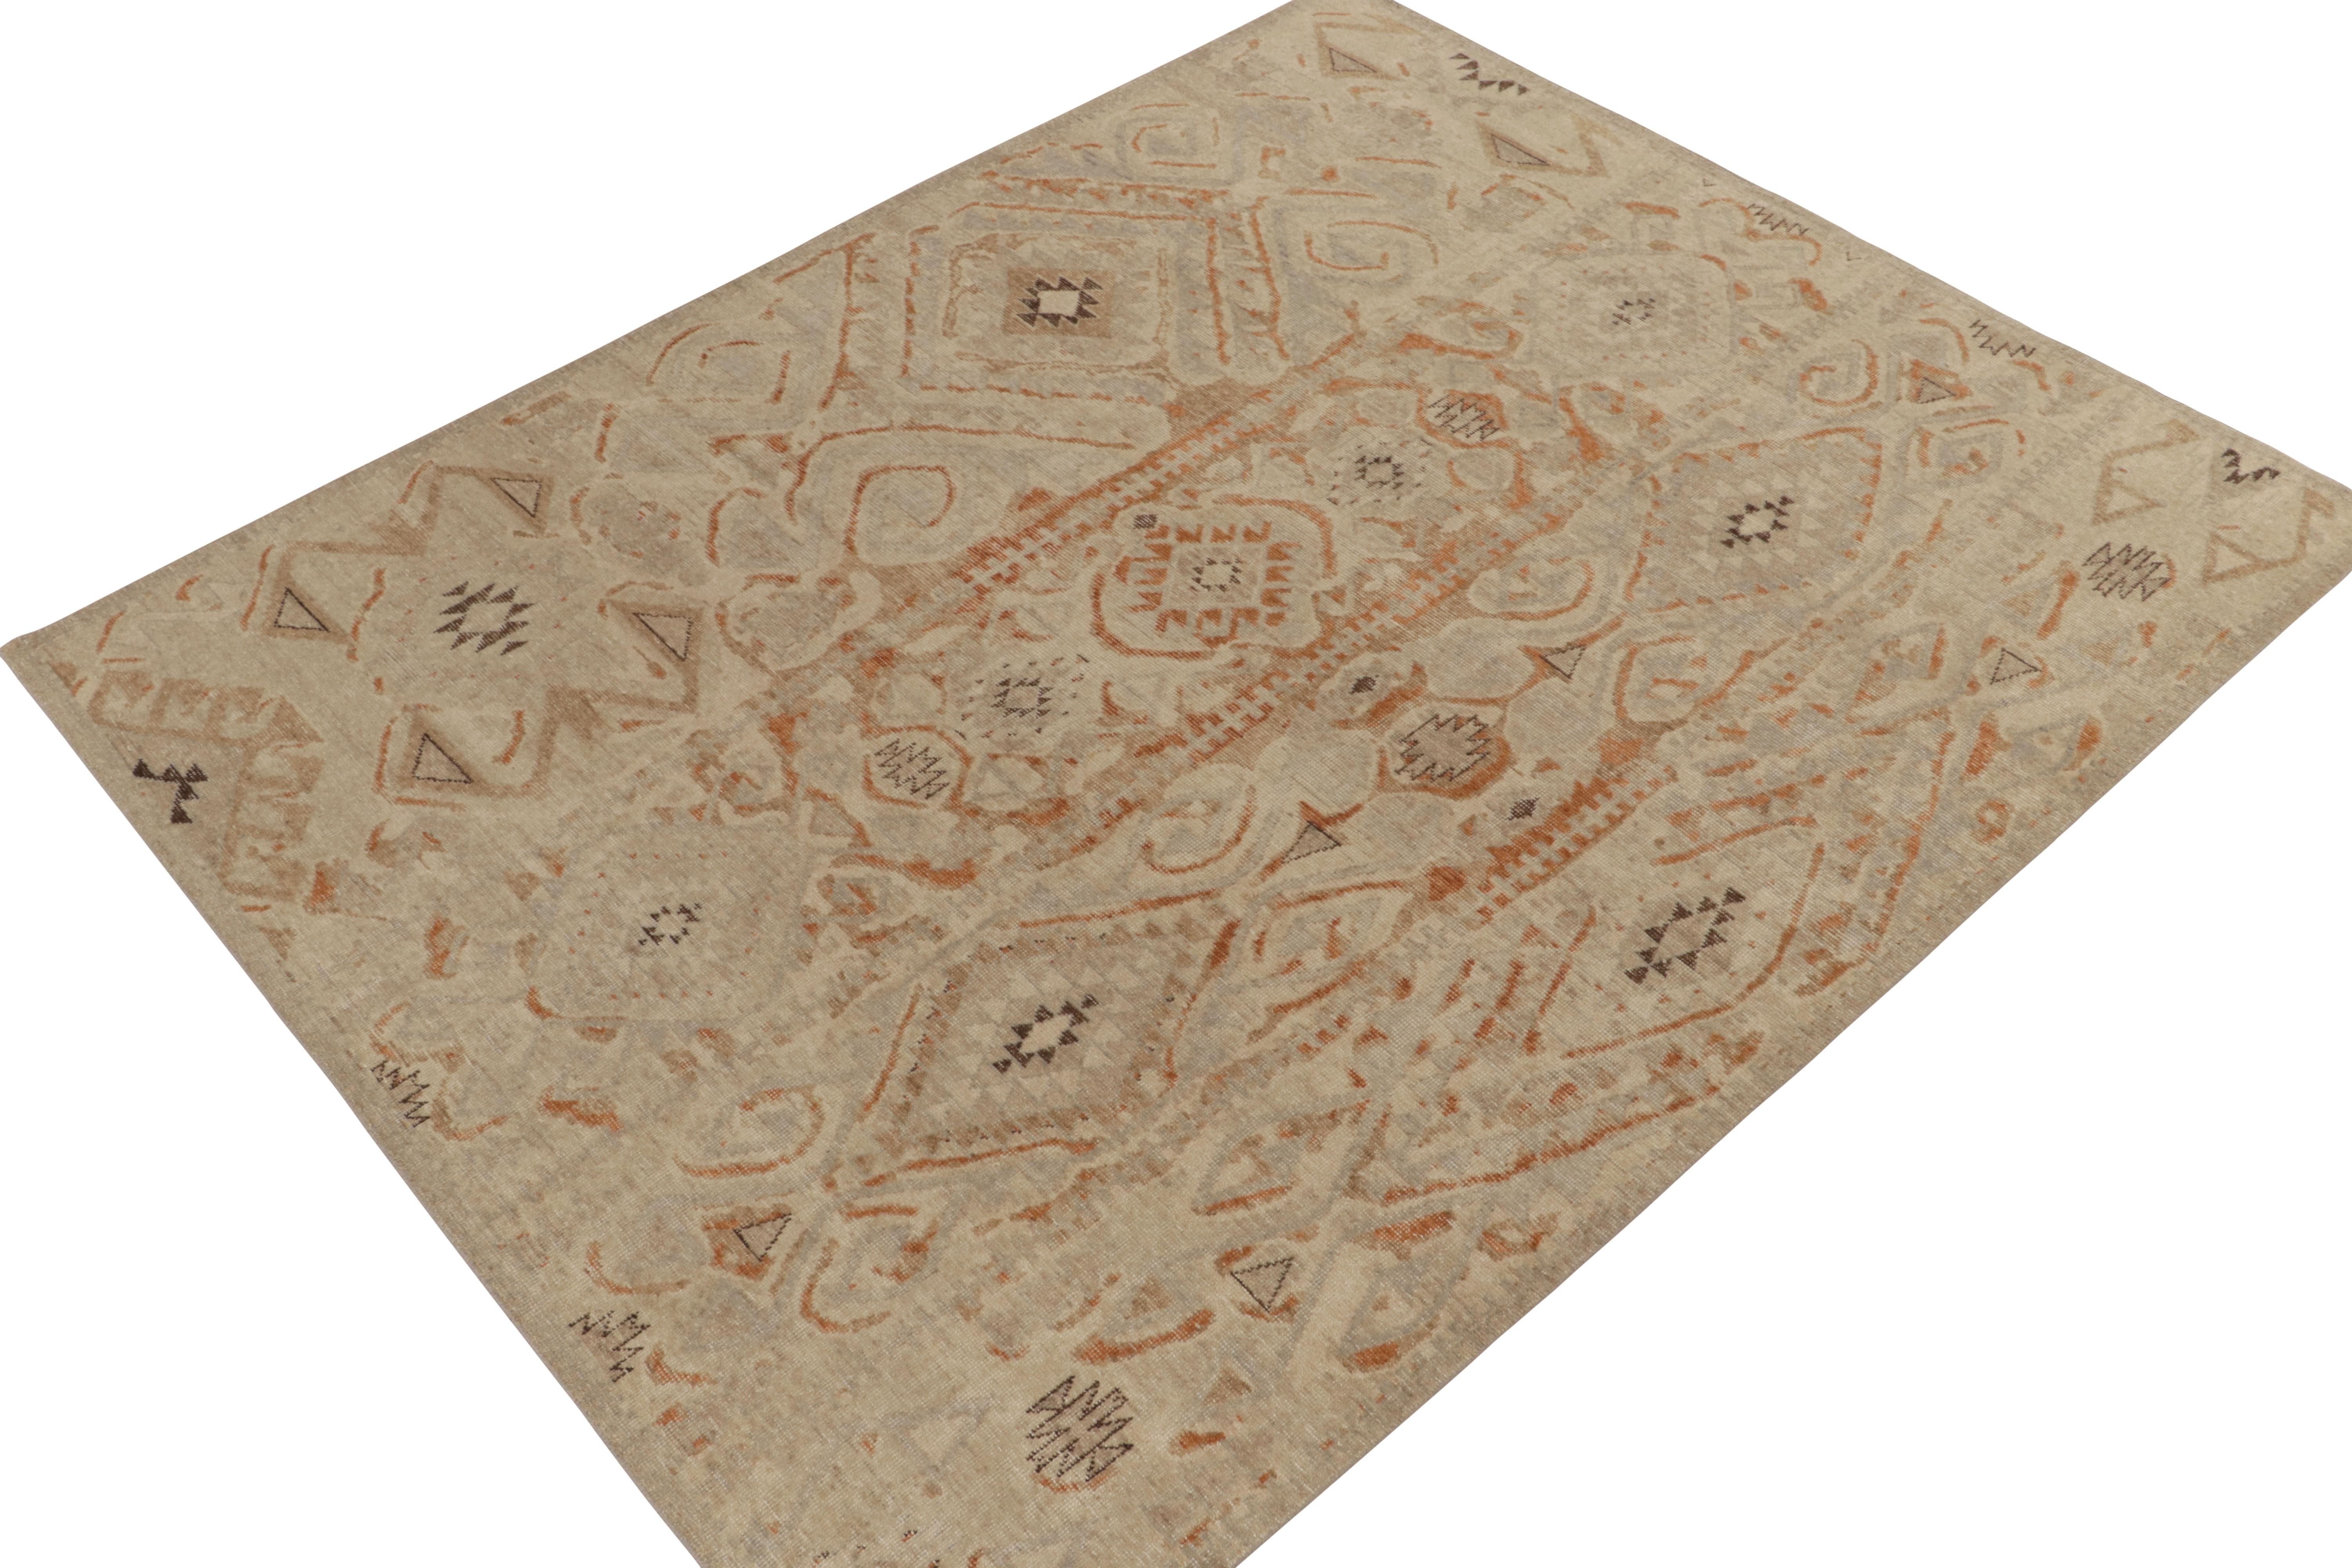 Ein aufregender 8x10 handgeknüpfter Wollteppich aus der Homage Collection'S von Rug & Kilim; eine kühne texturale Enzyklopädie von Mustern und Stilen. 

Über das Design: Diese Interpretation der Stammesästhetik erfreut sich an Beige-Braun mit Rost-